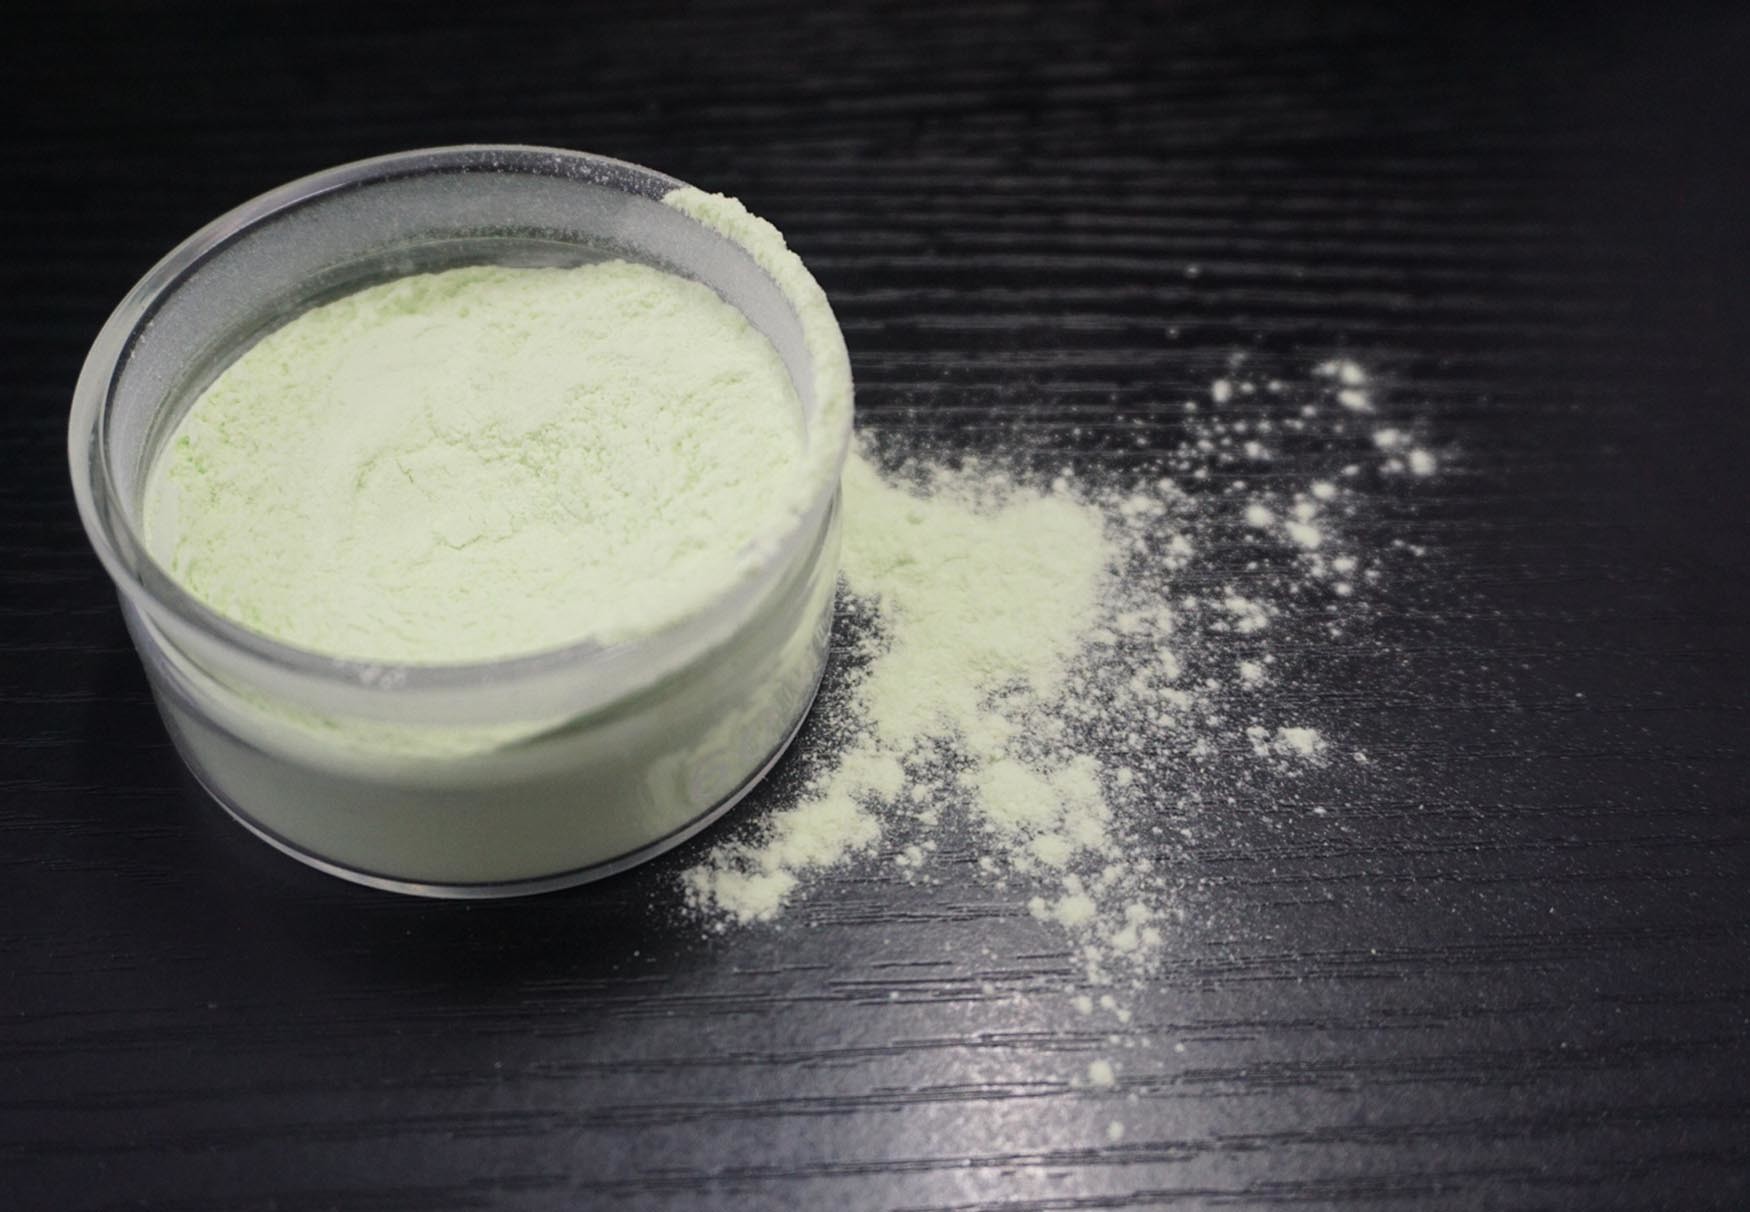 メラミン テーブルウェア粉のホルムアルデヒドの樹脂の質材料の粉